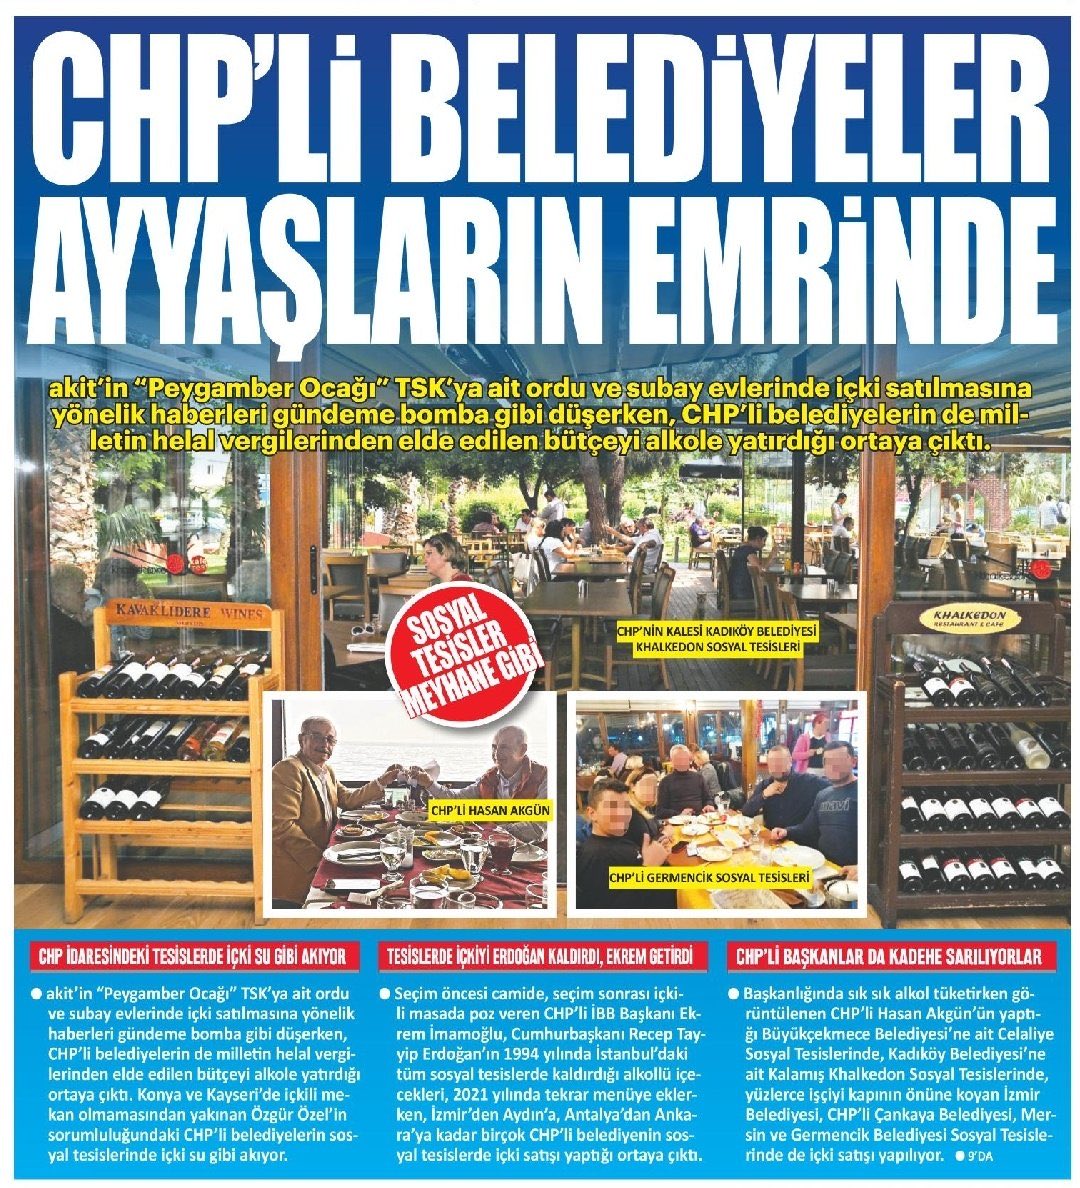 Lağım medyası! Tüm CHP li belediye başkanları ve @herkesicinCHP dava açmasını bekliyoruz. Bu arsız gazetenin yaptıkları bini aştı. Size bulaşmıyorsak, keneften uzak durmak istediğimiz için ama artık yeter!